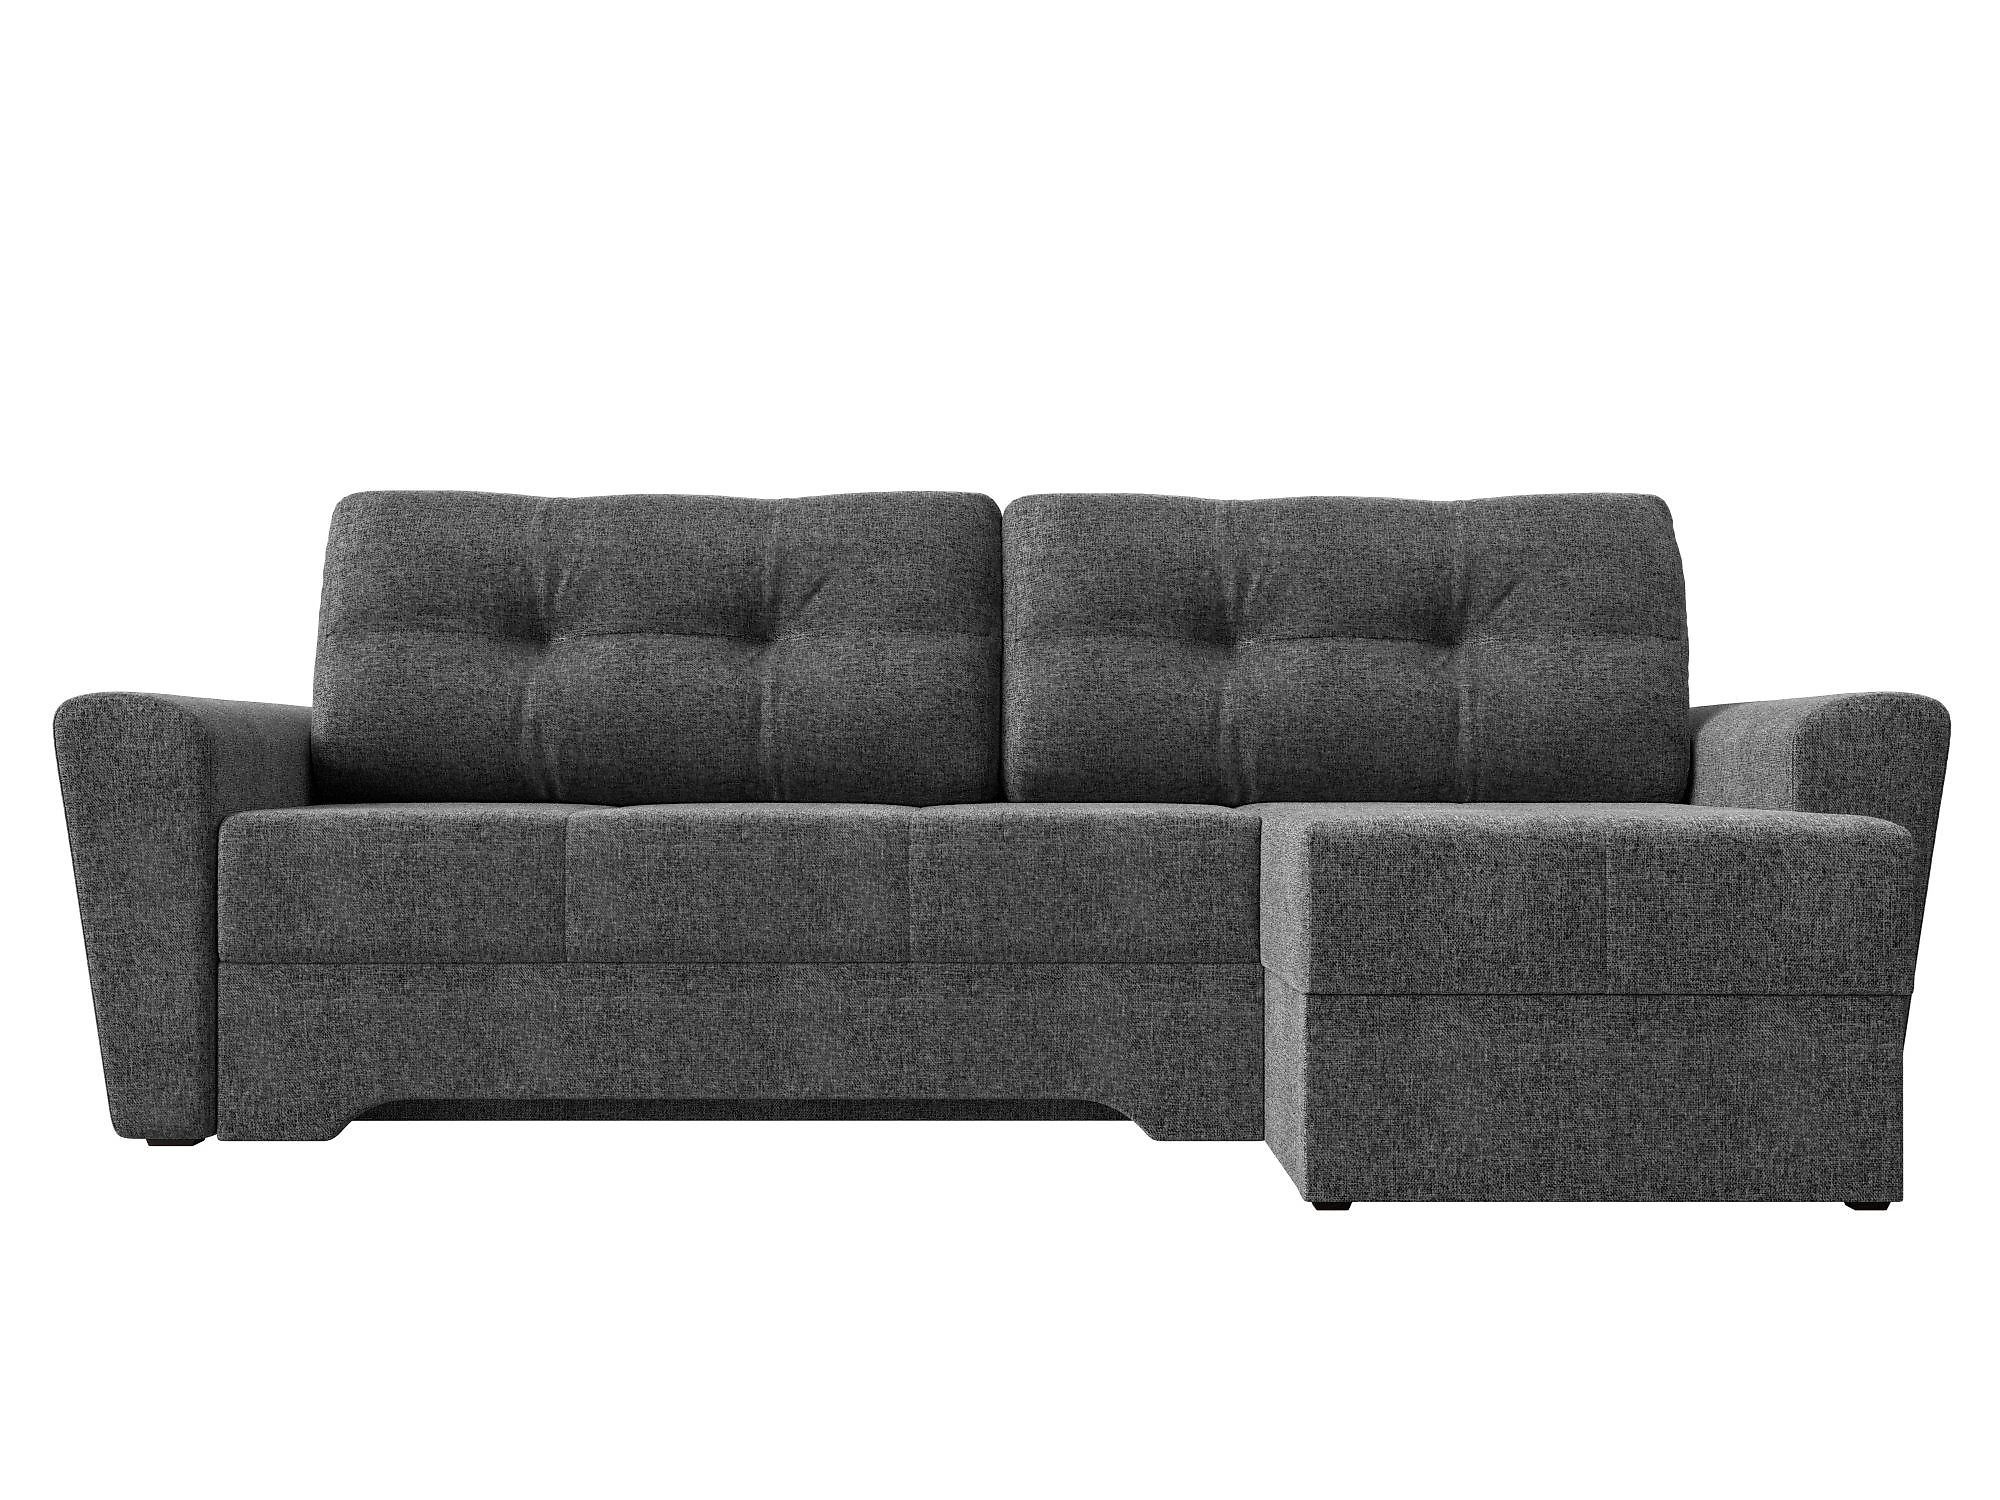  угловой диван из рогожки Амстердам Кантри Дизайн 2